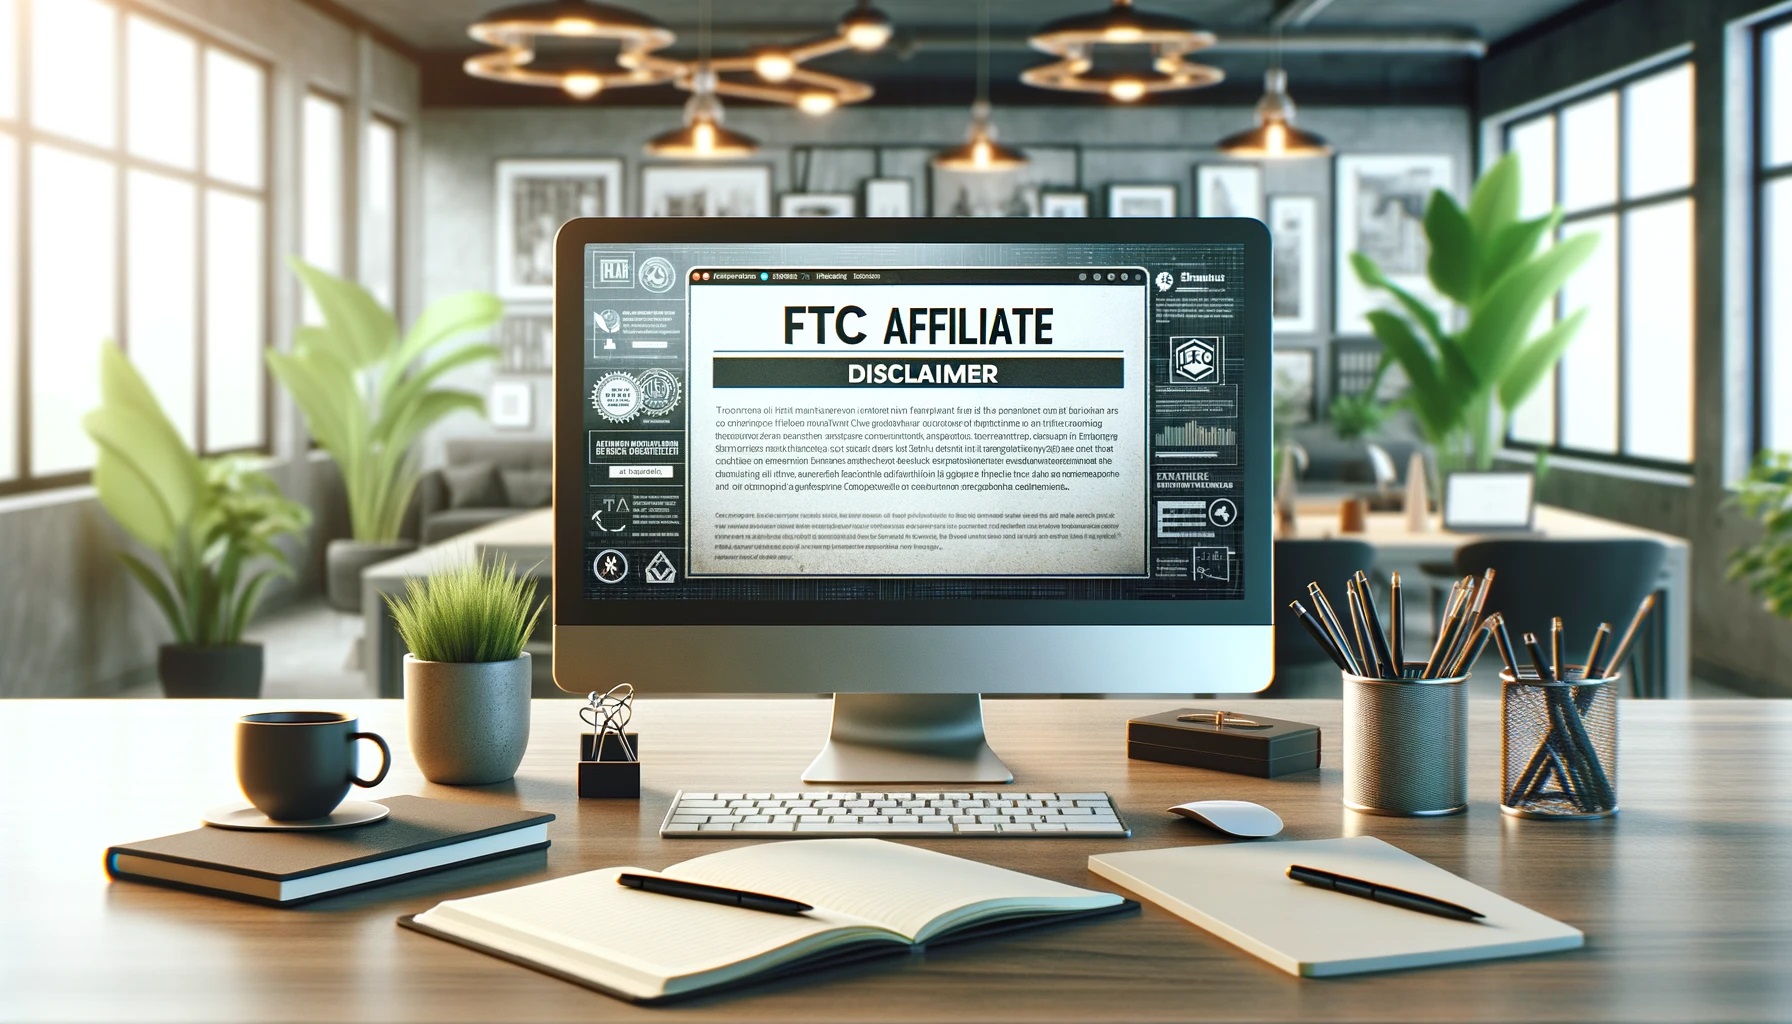 Affiliate FTC Disclaimer